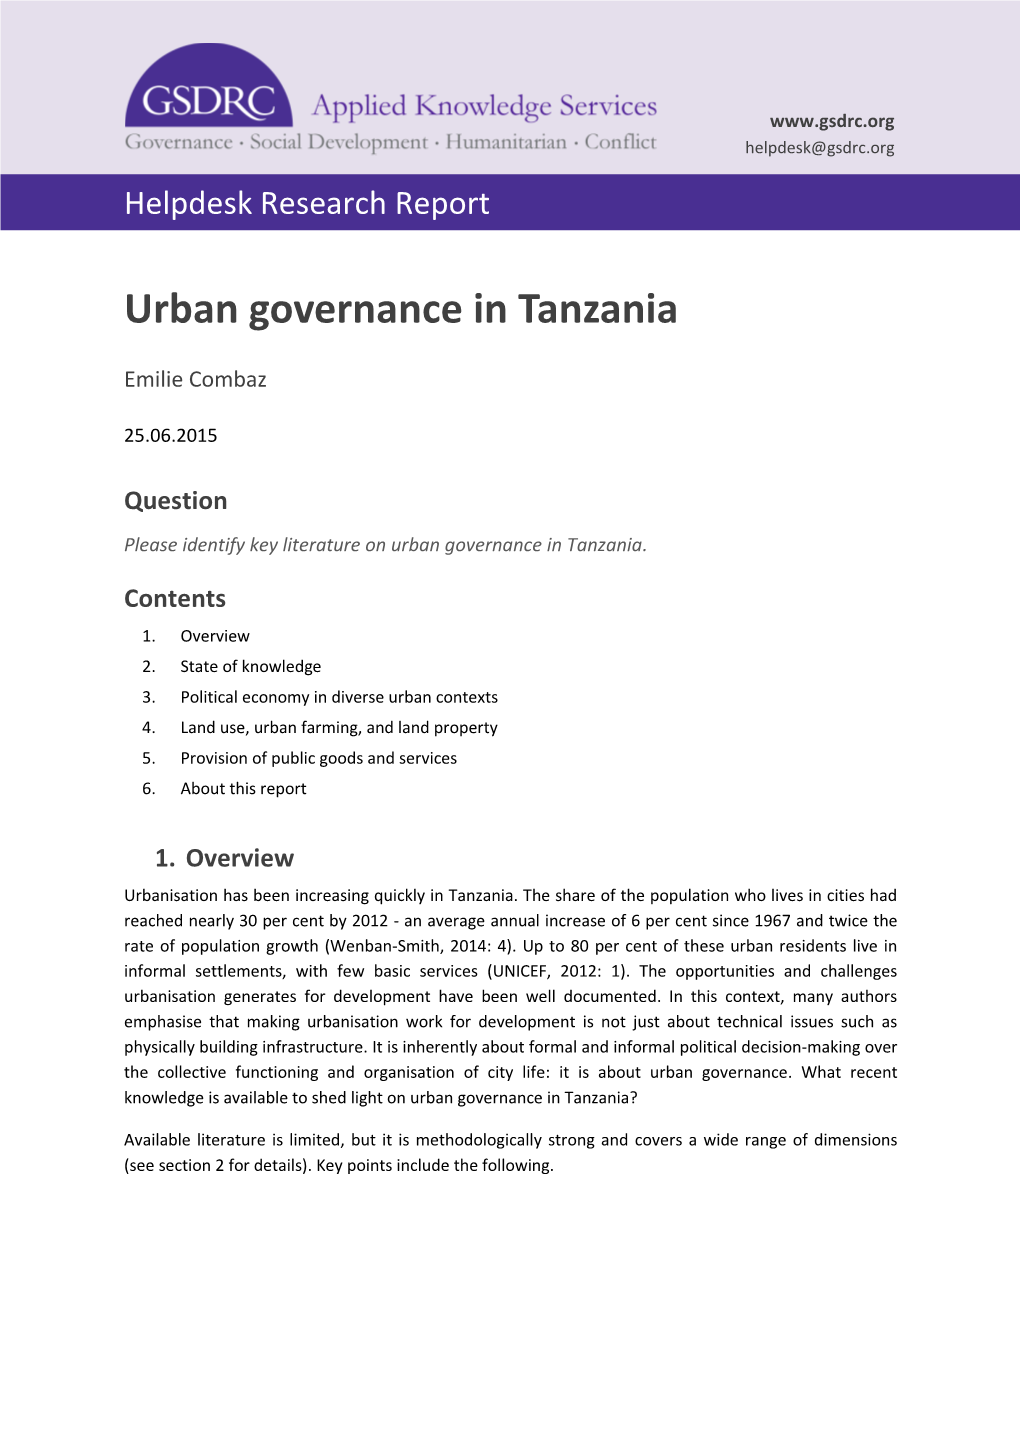 Urban Governance in Tanzania